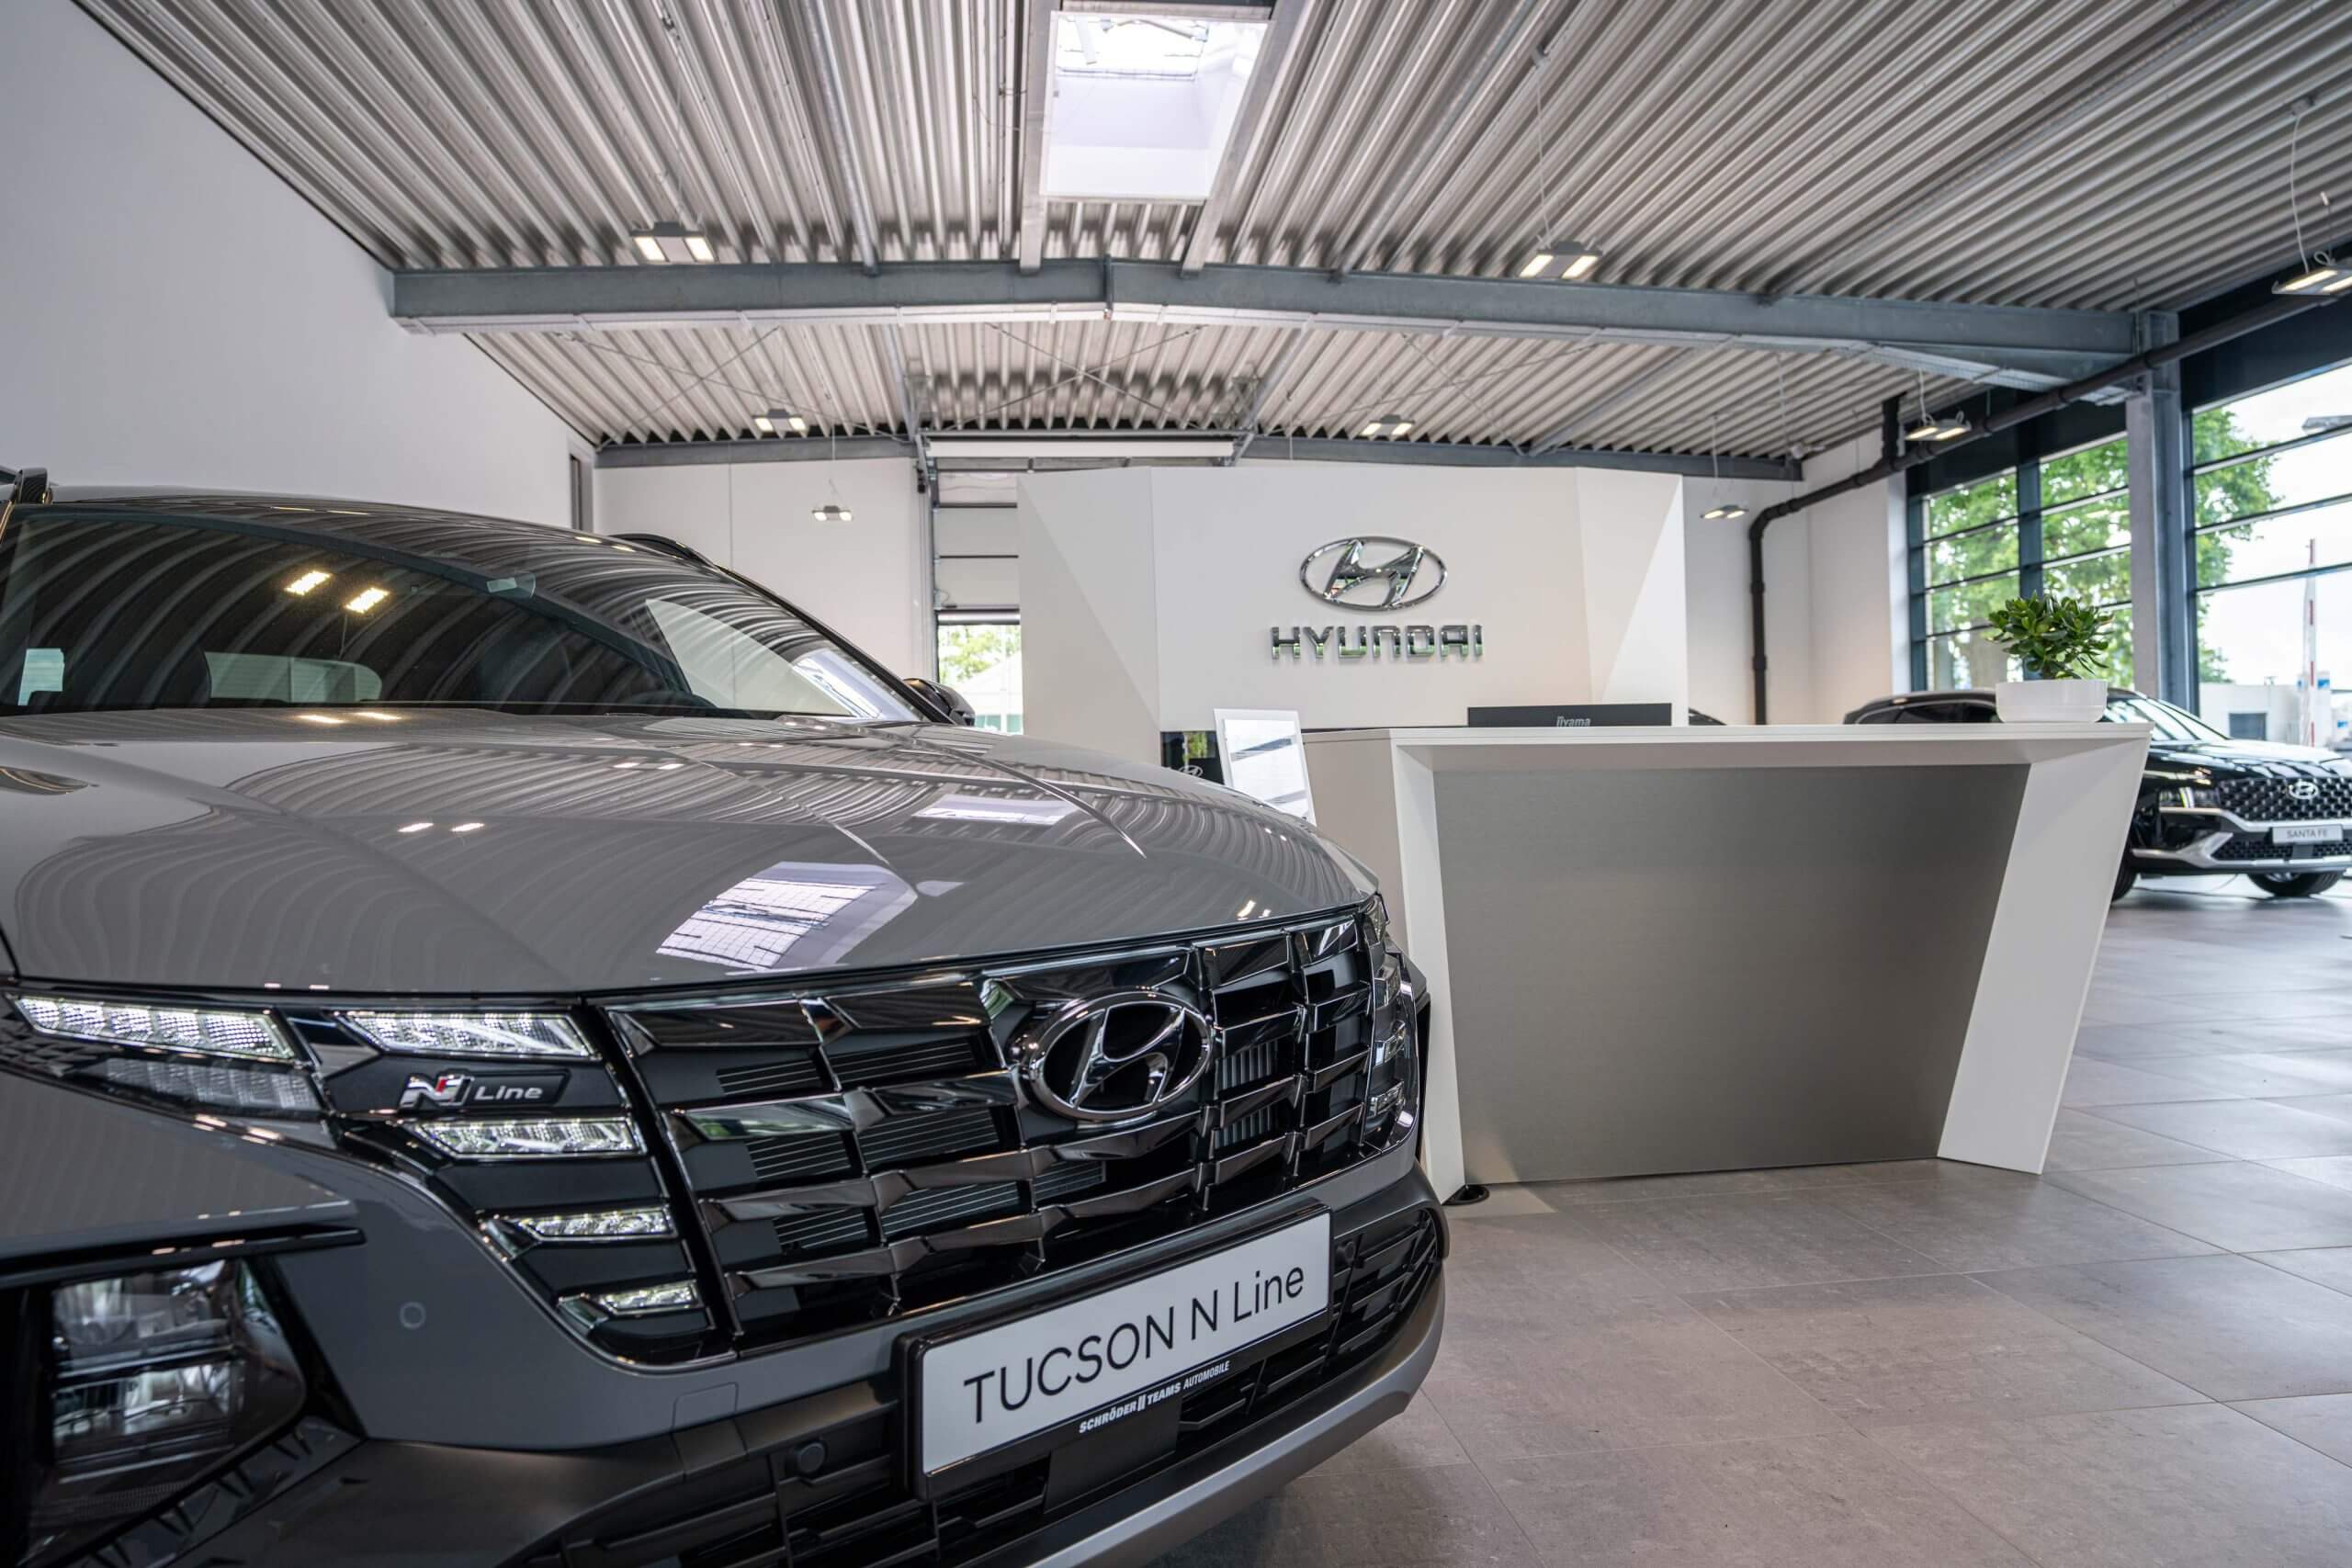 Schröder Team feiert Hyundai Neueröffnung in Verl